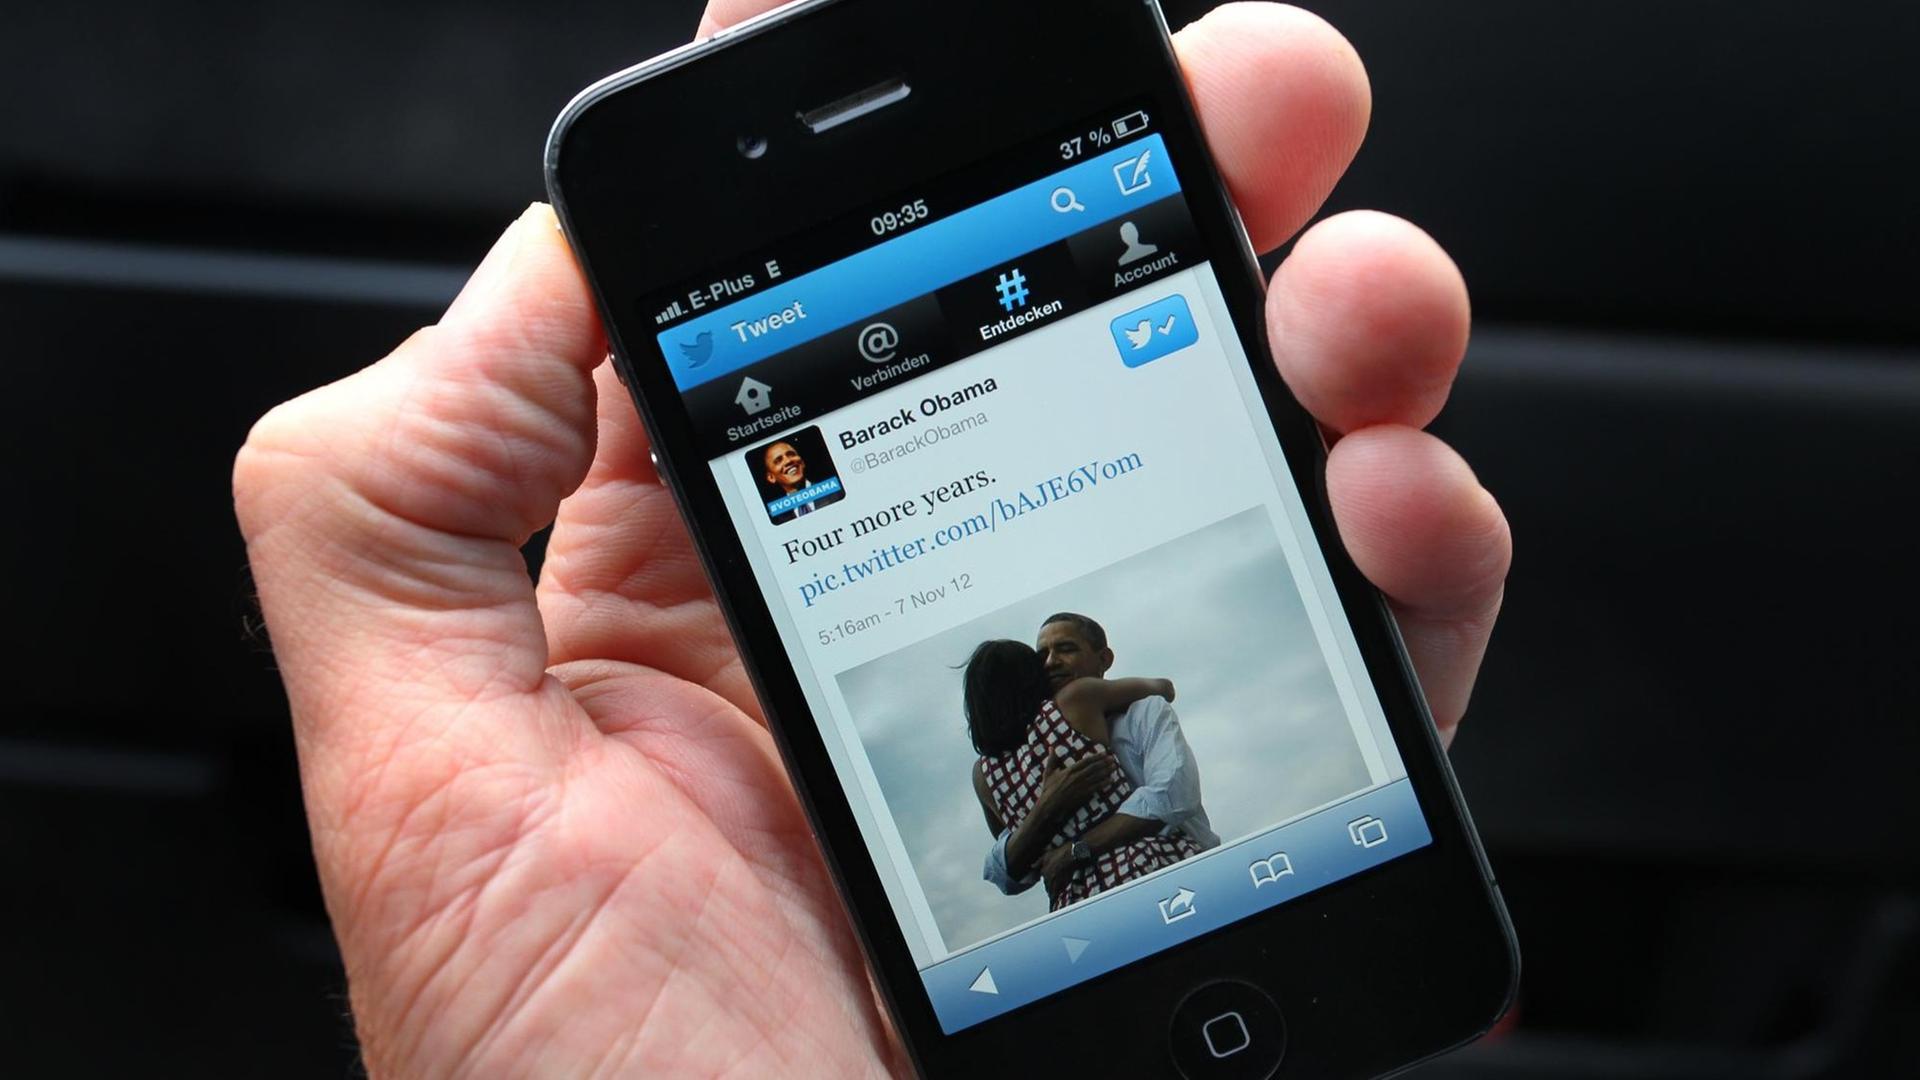 Smartphone auf dessen Display die Twitter-Nachricht "Four more years" von Barack Obama angezeigt wird.